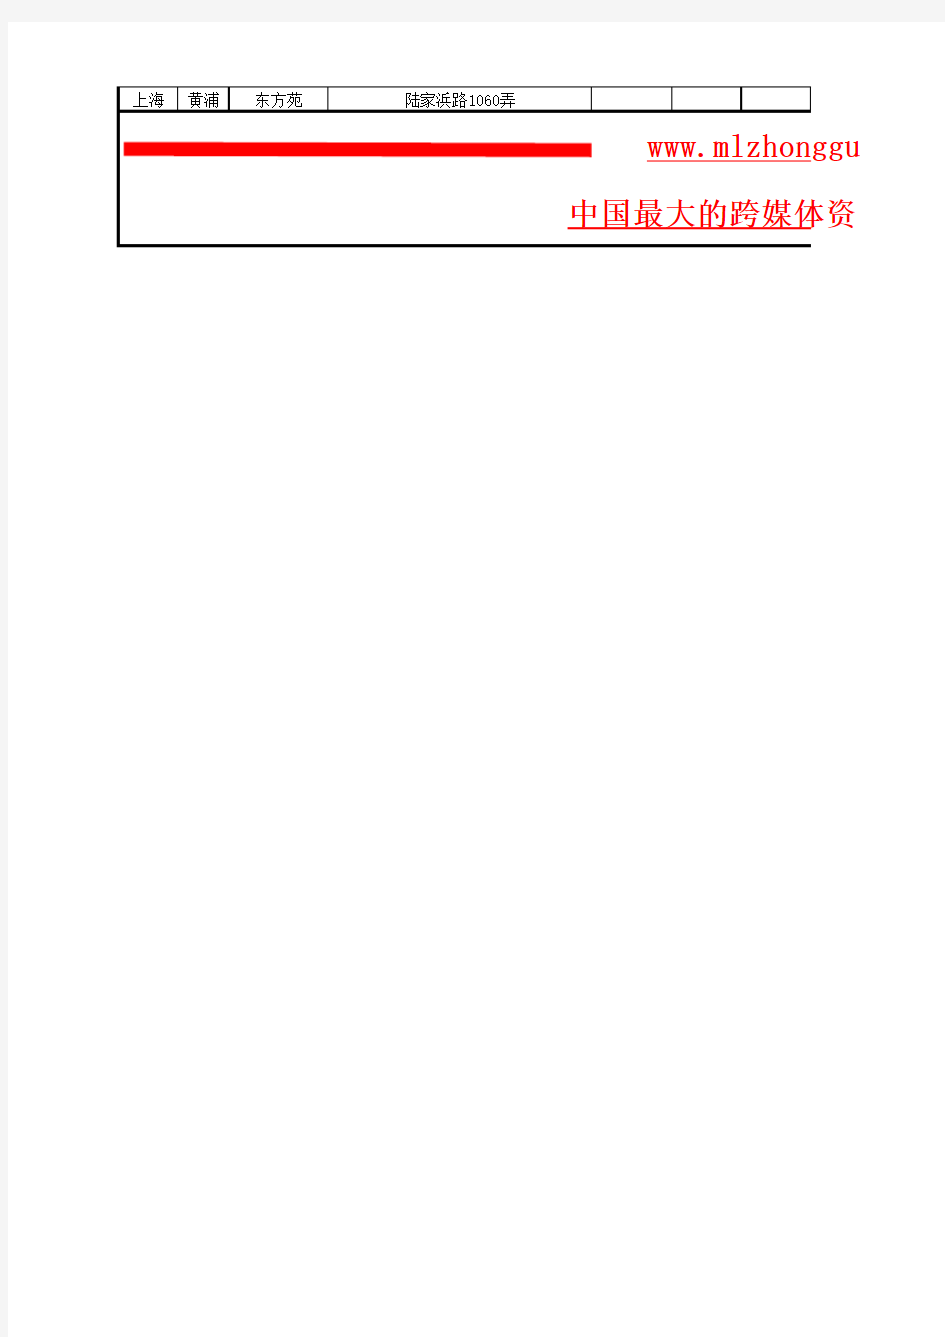 2016年社区灯箱广告黄浦区资源表(媒力中国点位表)